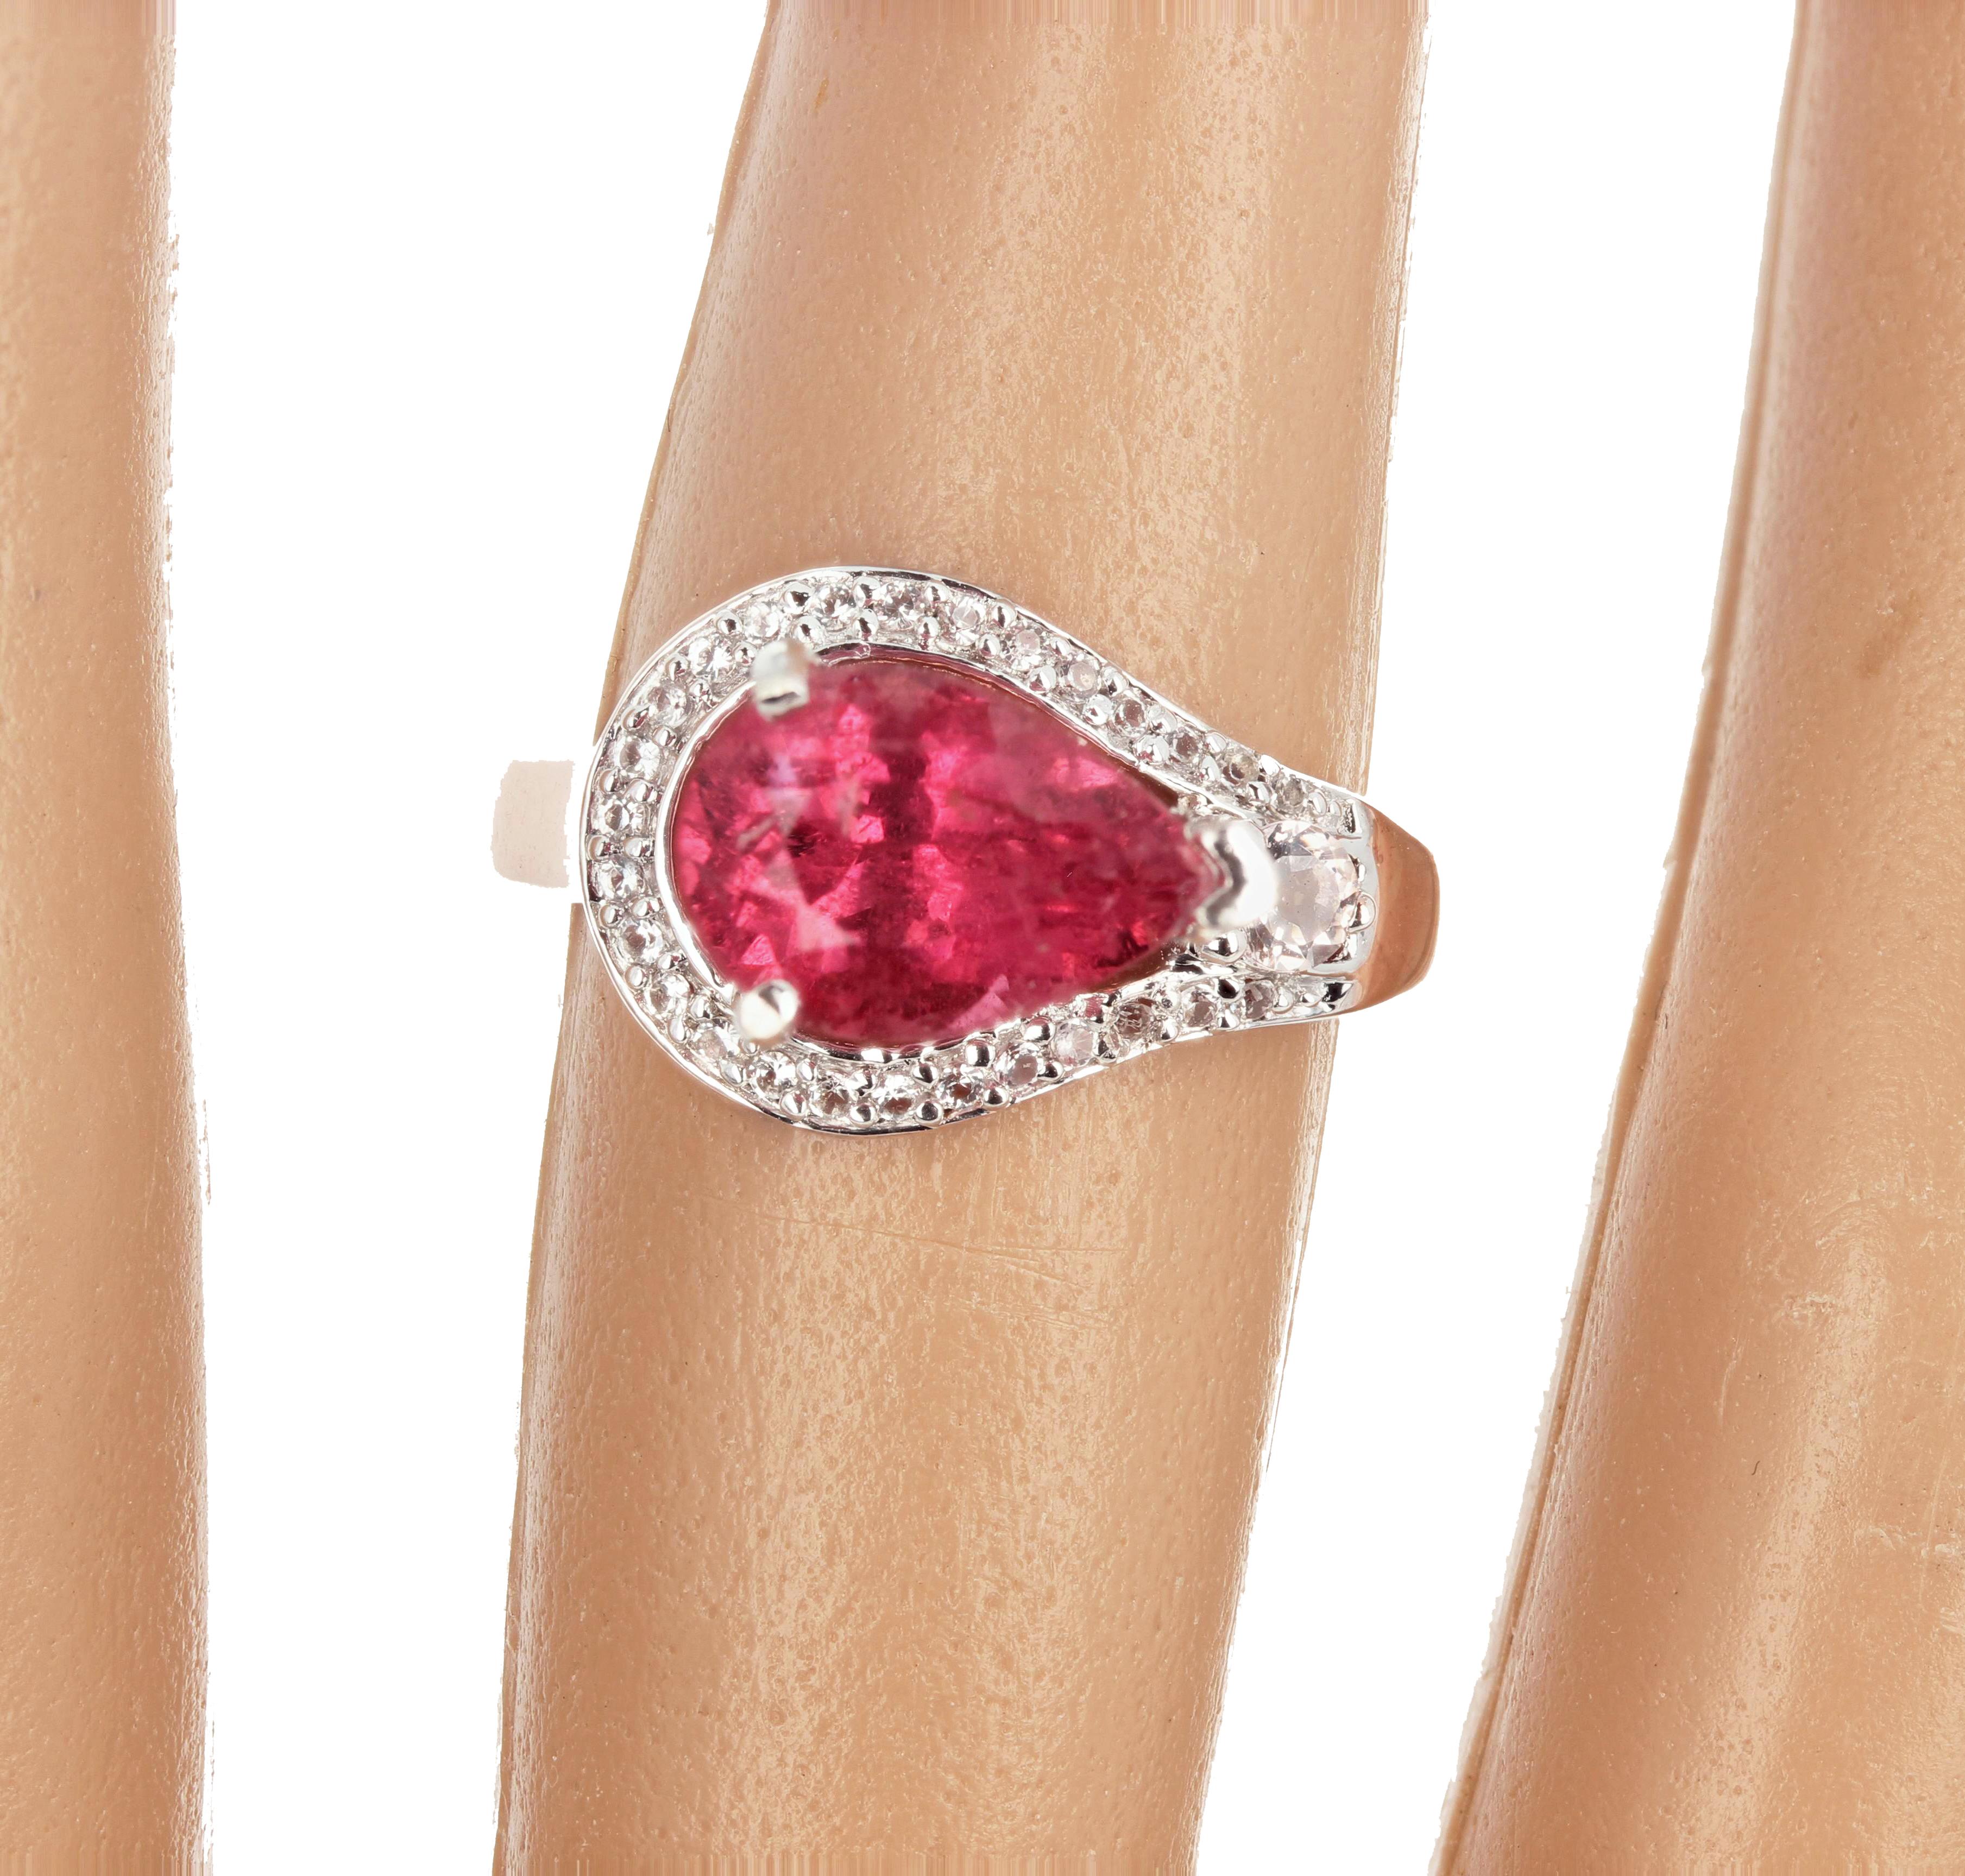 Dieser glitzernde, rötliche Turmalin im Birnenschliff ist in einem Ring aus rosévergoldetem Sterlingsilber der Größe 7 gefasst und mit winzig kleinen weißen Diamanten verziert.  Er glitzert wunderschön auf der Hand. 